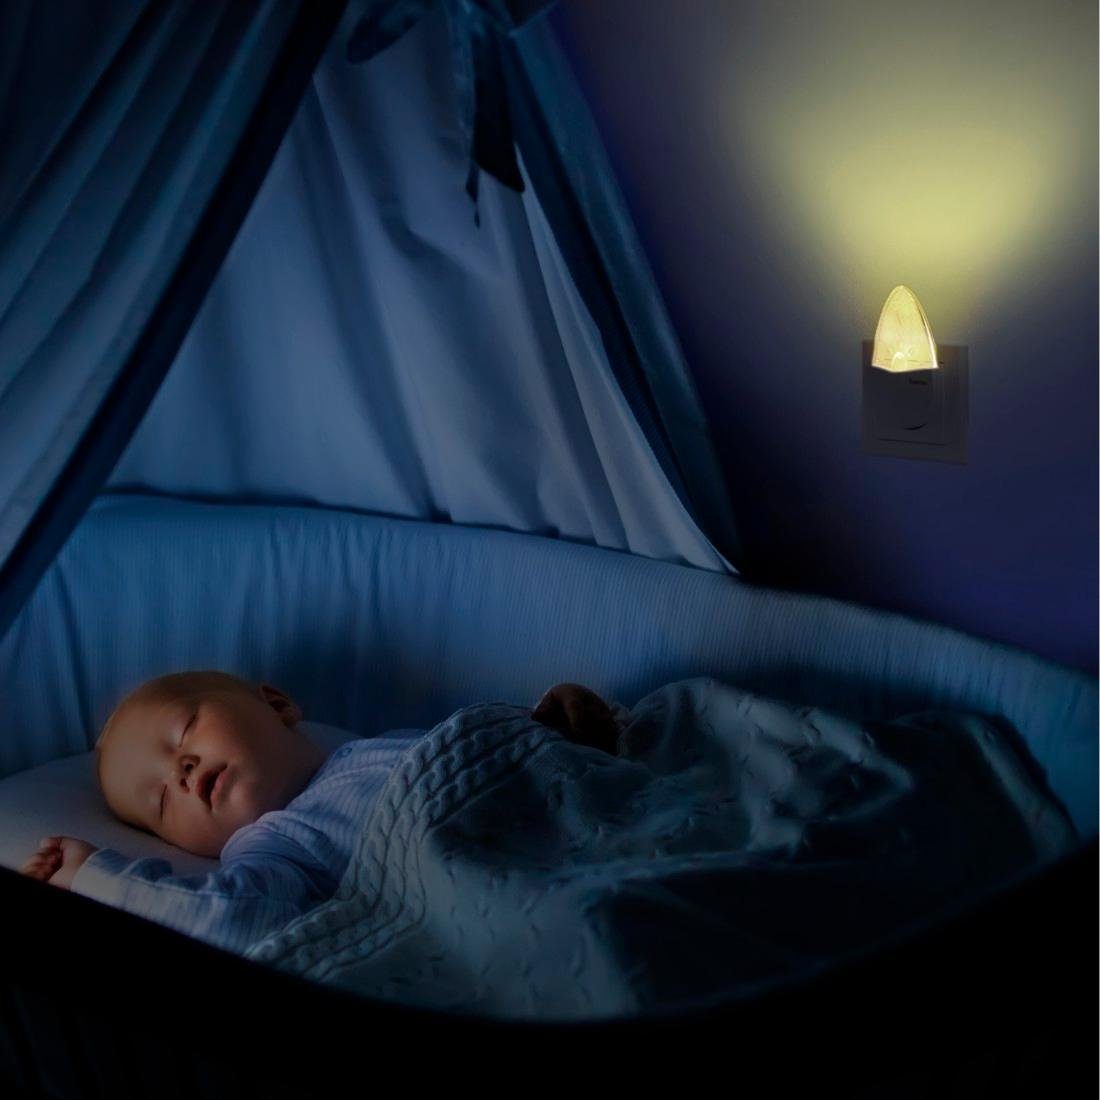 LED Nachtlicht bernsteinfarben Steckdose Nachtlampe Kinder, integriert, Nachtlichtfunktion, Hama Bernstein, Baby, für fest Schlafzimmer, LED